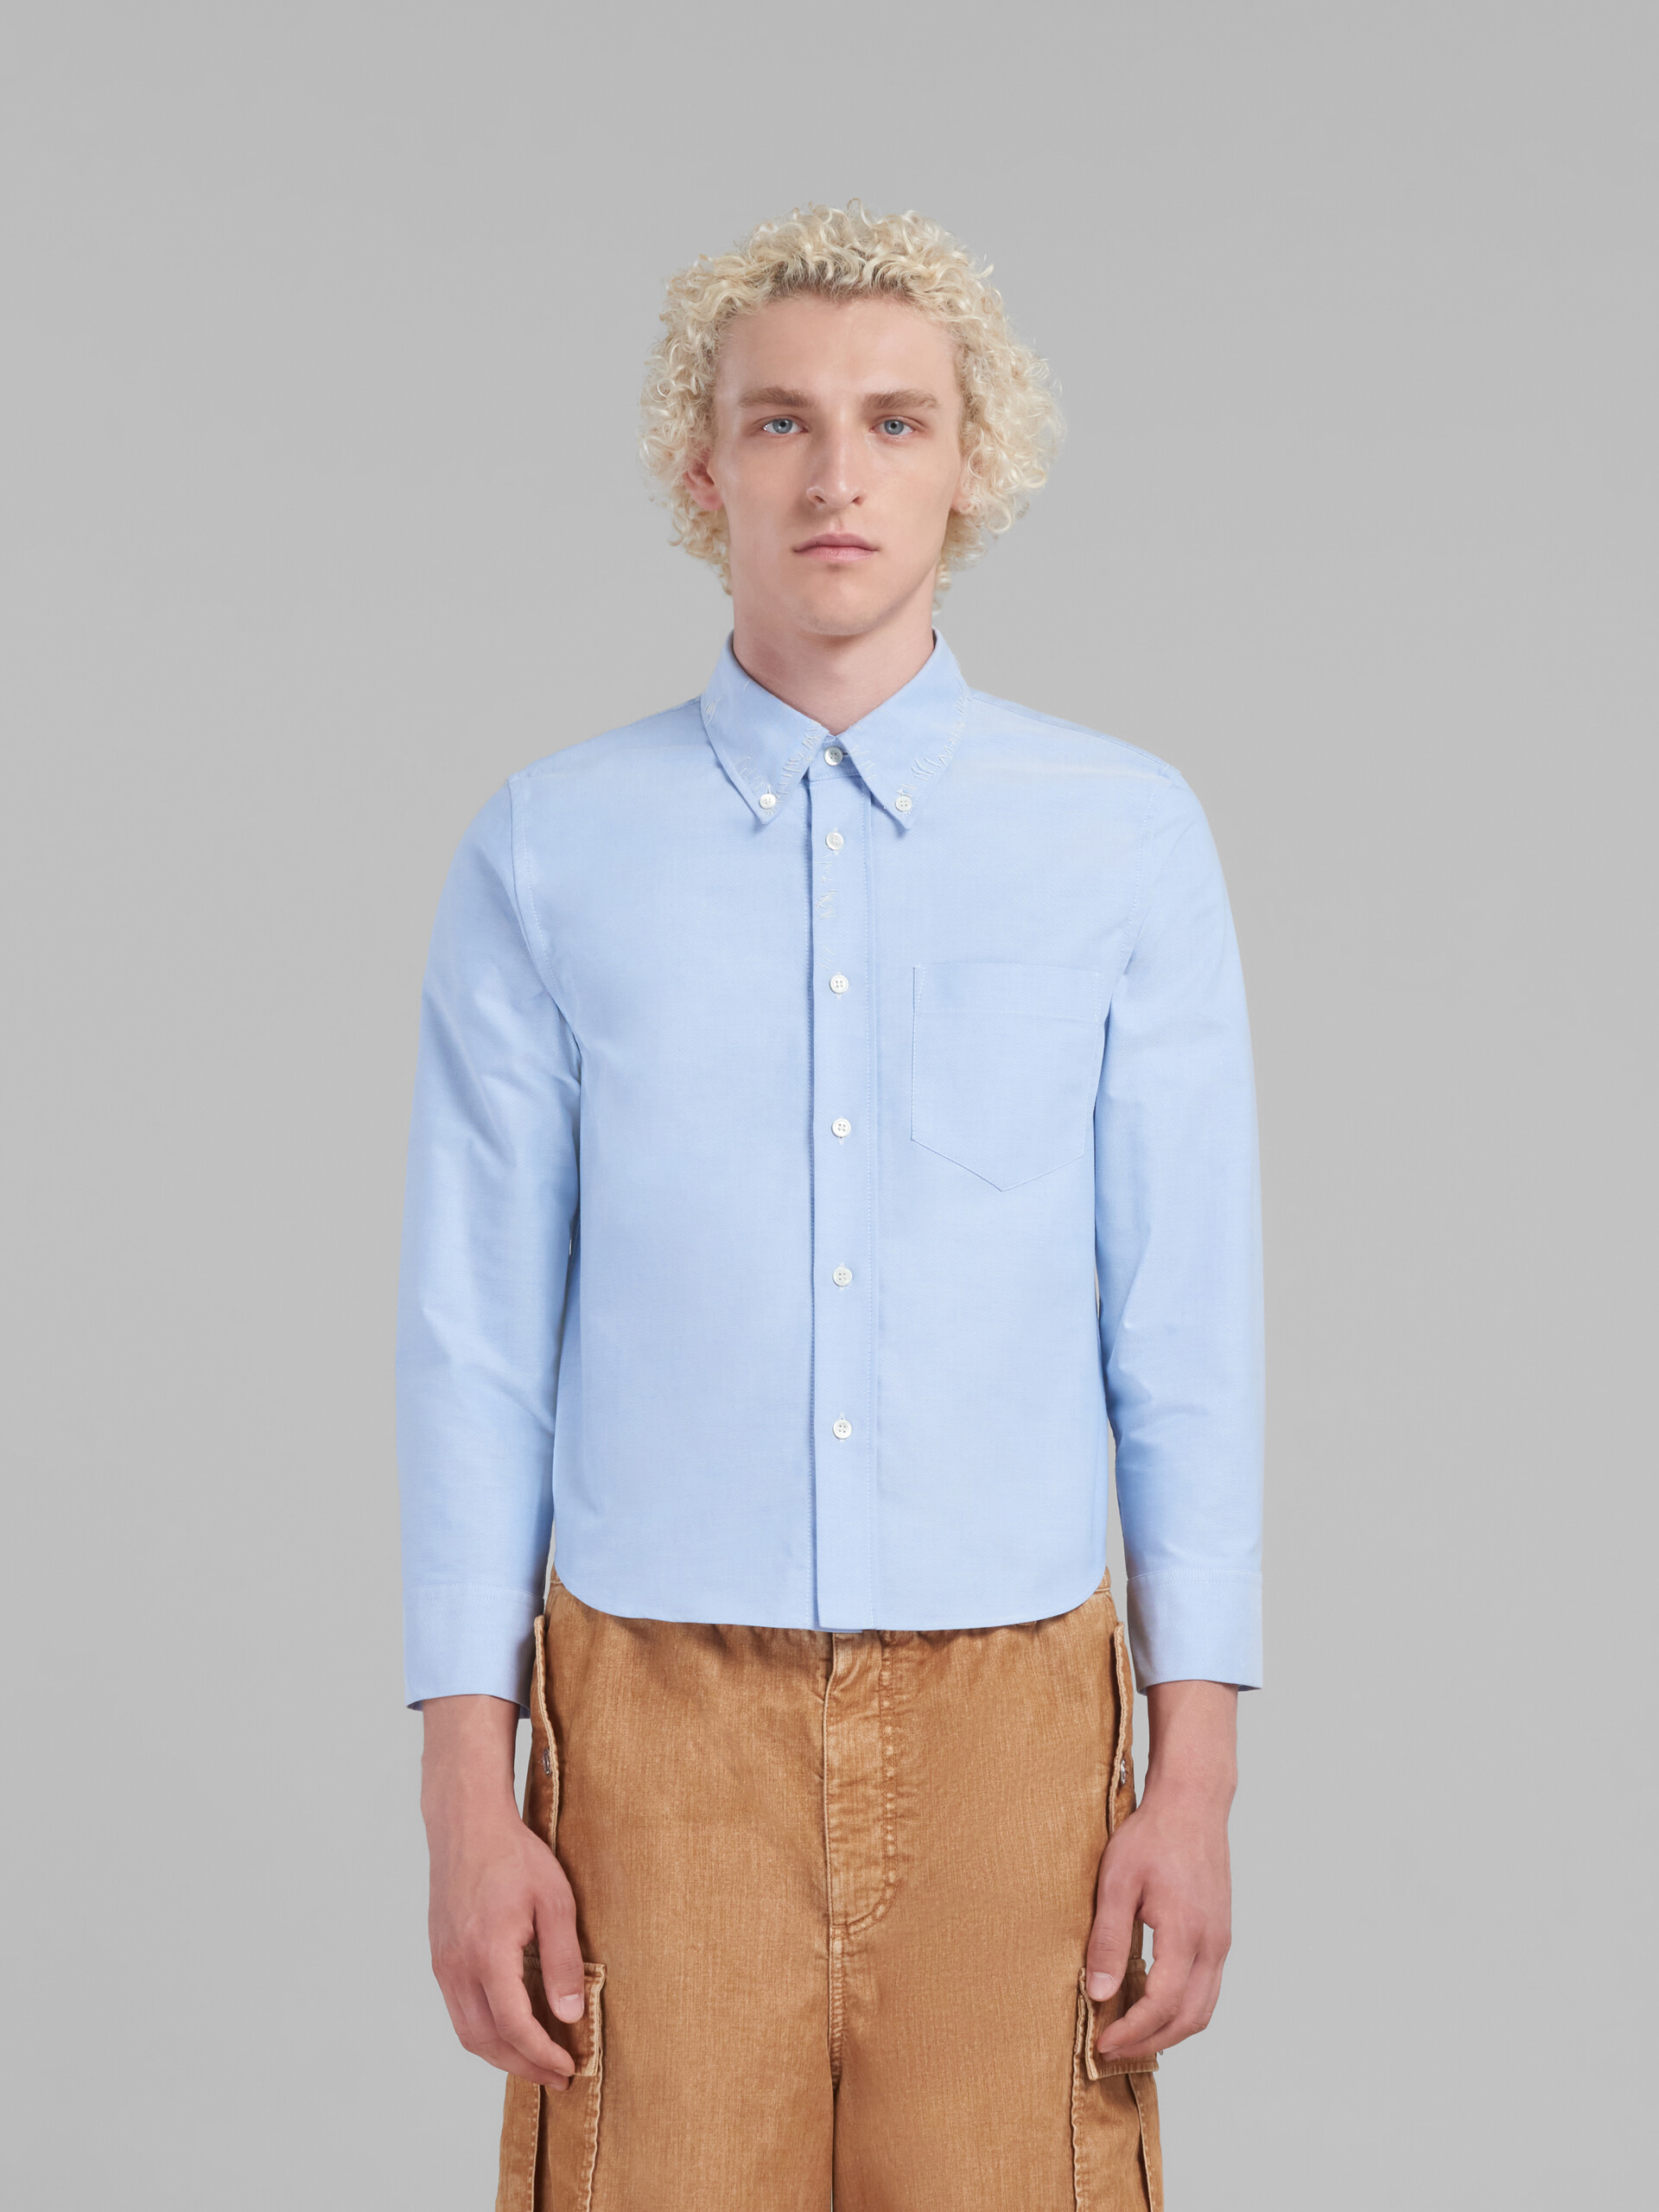 Camisa corta de oxford azul claro con efecto remiendo Marni - Camisas - Image 2